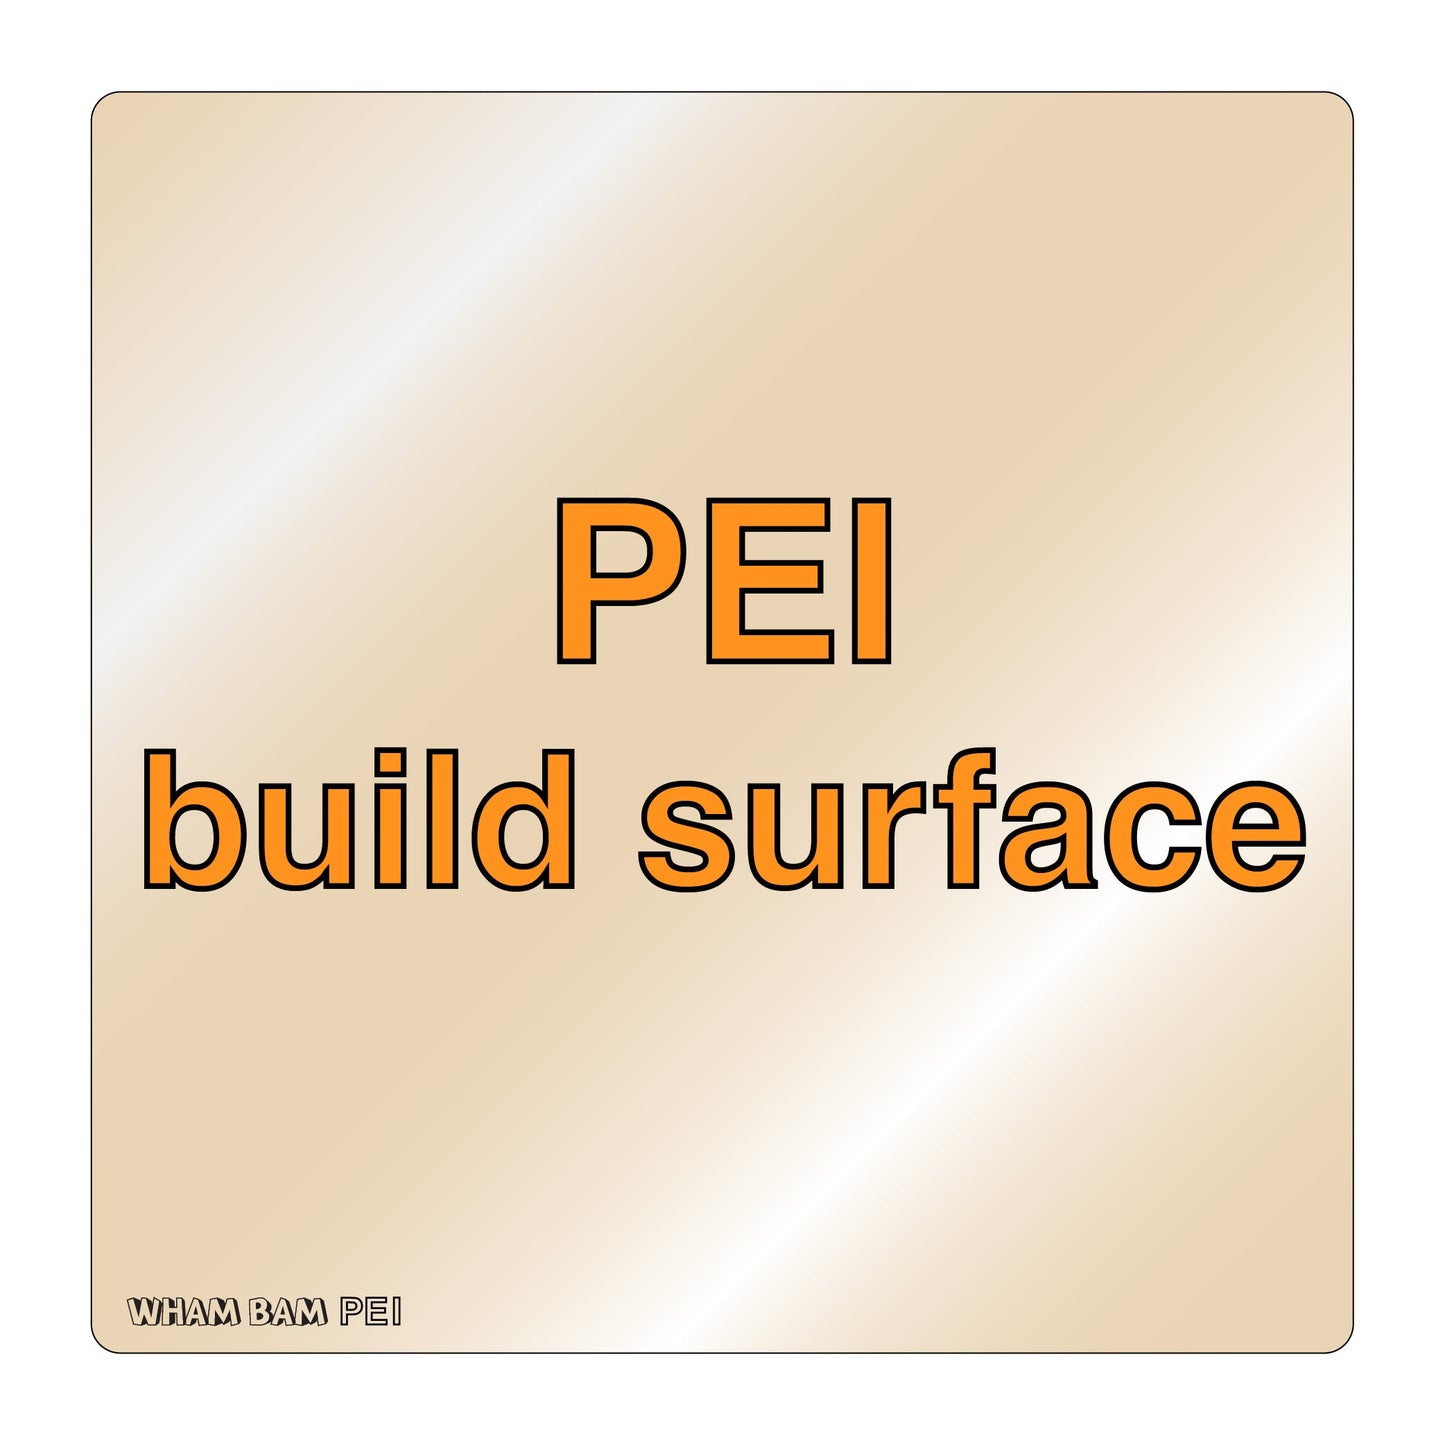 PEI Build Surface - 330 x 330 - Geeetech A30, Raise3d Pro2 & Pro2 Plus, TronXY X3S  X5S